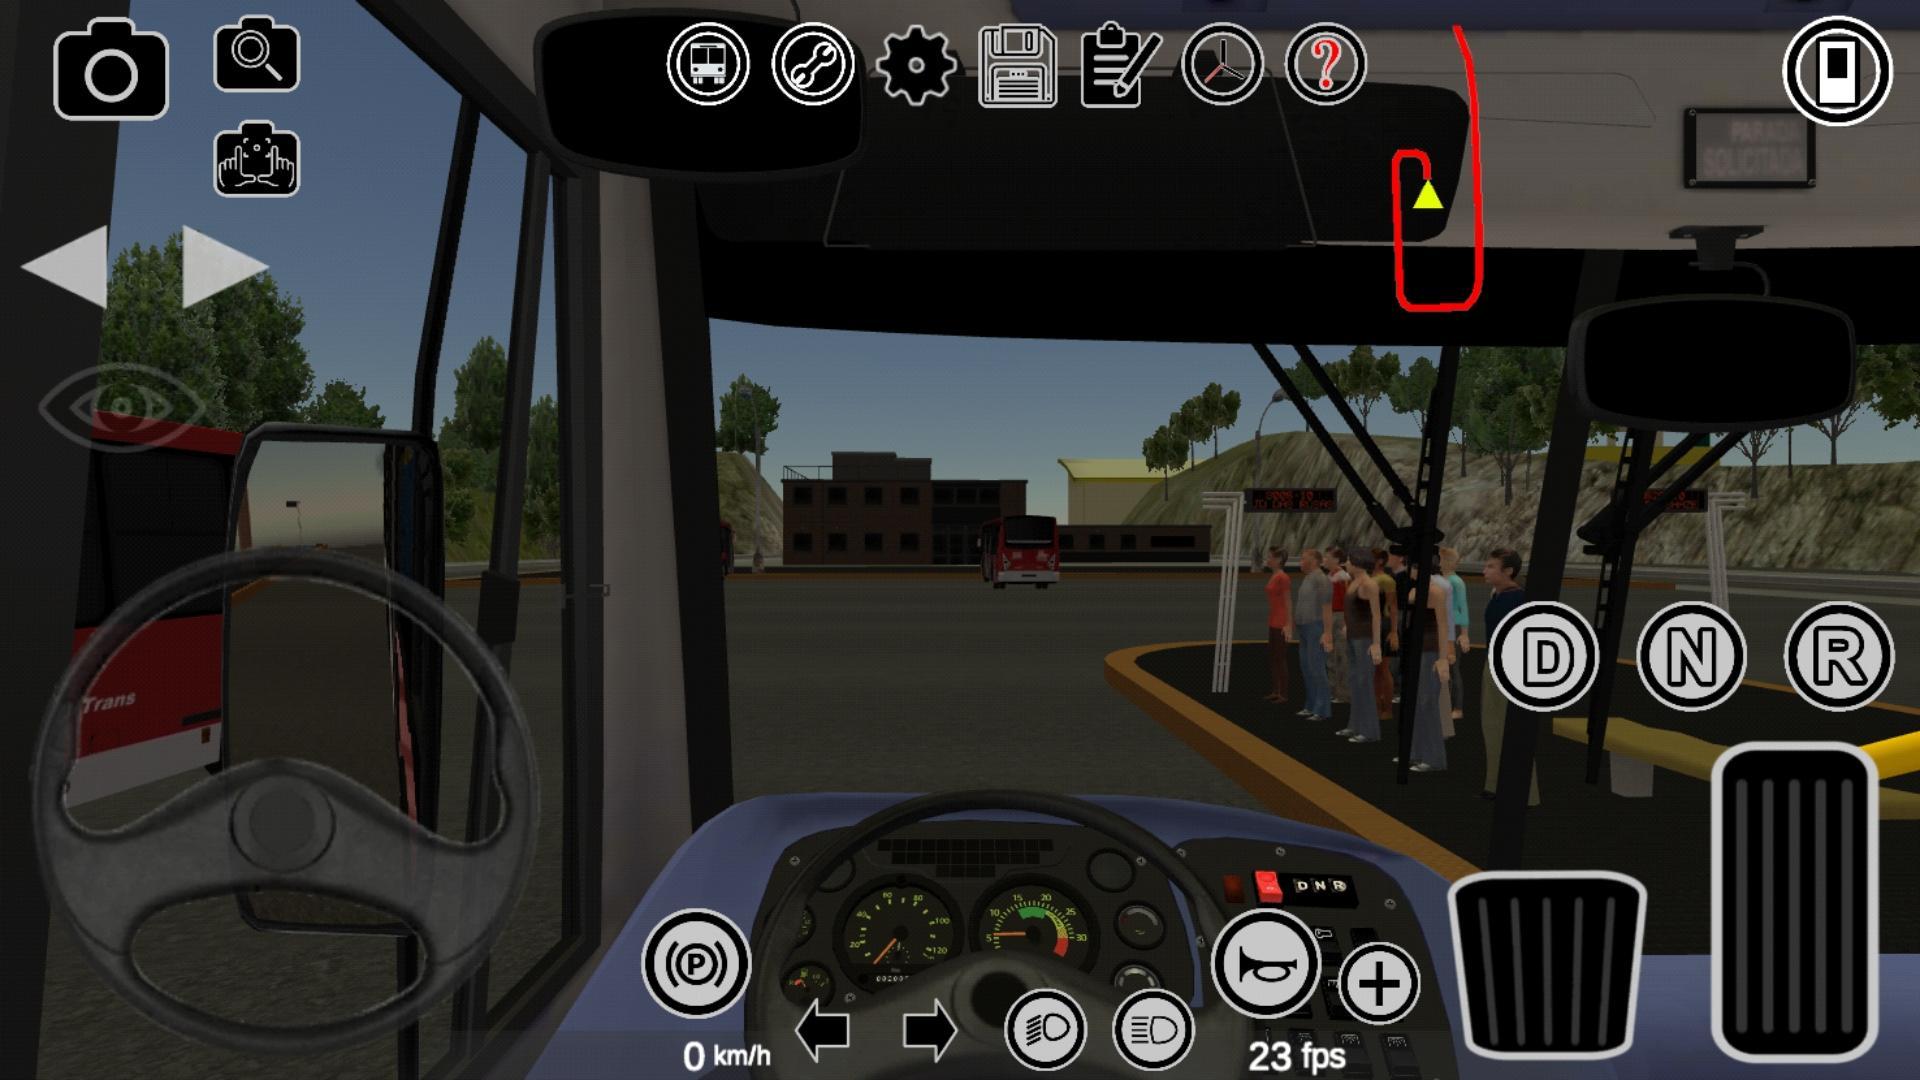 Игра протон автобус симулятор